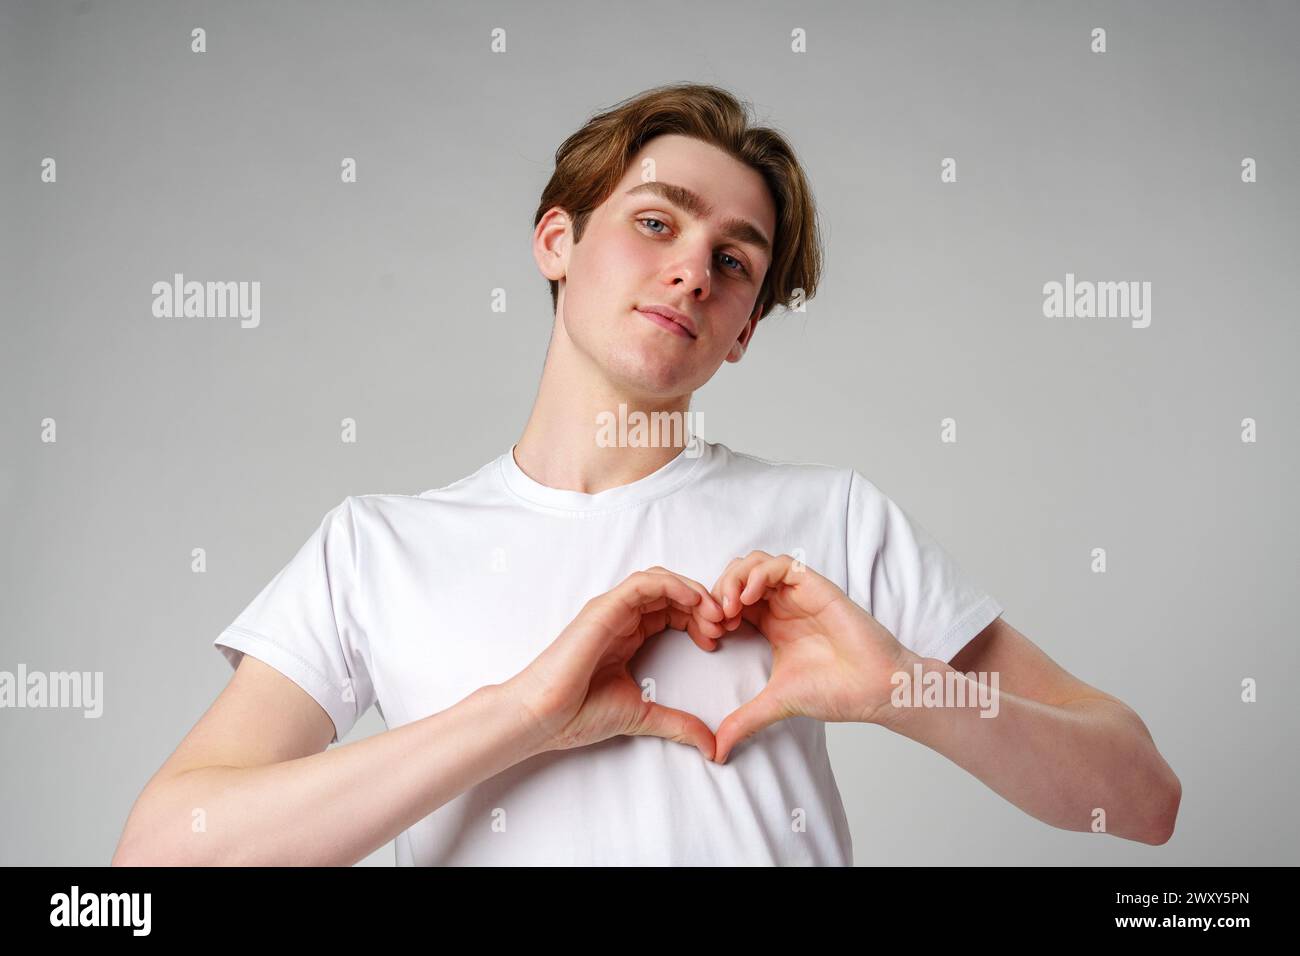 Junger Mann, der Herzform macht, mit Händen vor einem schlichten Hintergrund Stockfoto